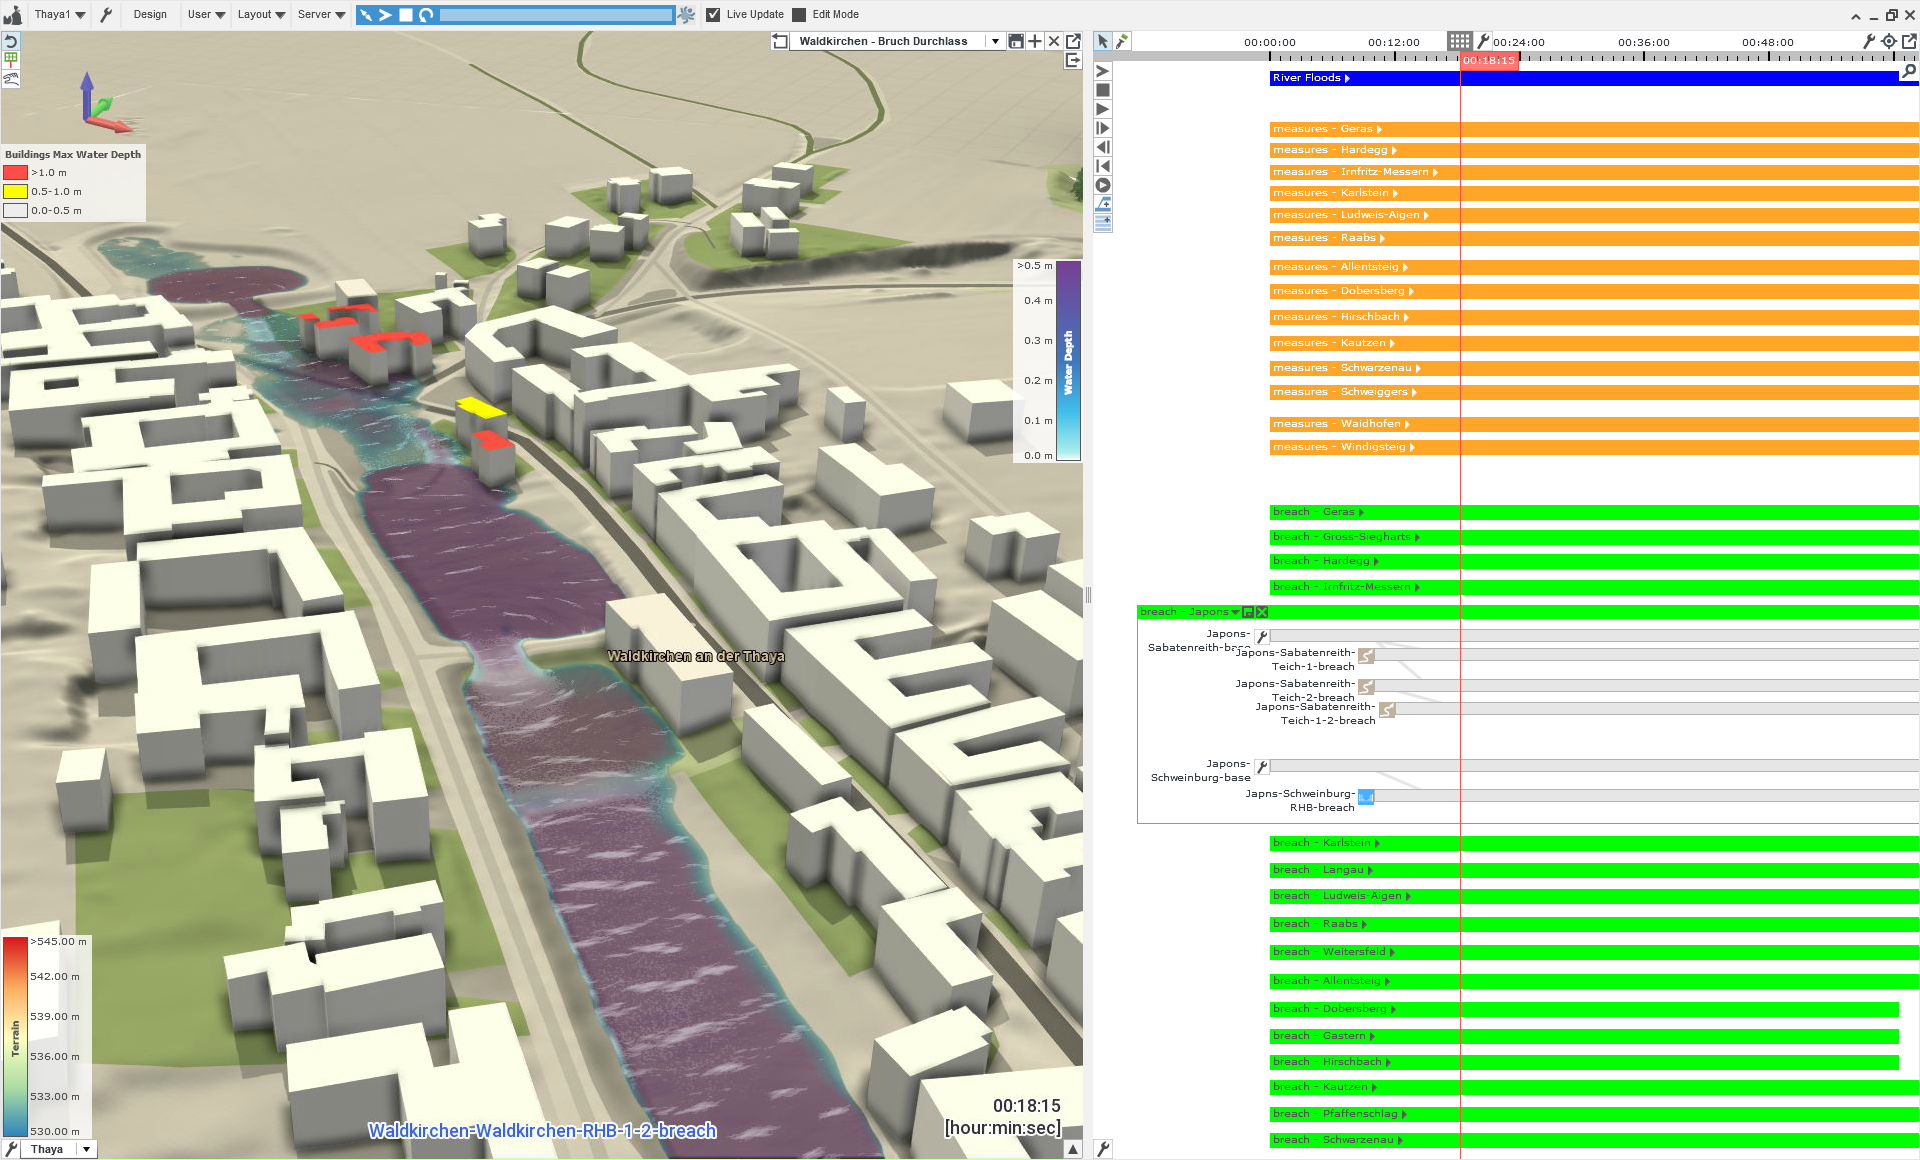 Screenshot aus der Software Visdom, die links eine Visualisierung einer Gemeinde an einem Fluss zeigt sowie rechts verschiedene Möglichkeiten, um diverse Starkregenereignisse, Flusshochwässer, Deichbrüche und Schutzmaßnahmen einzustellen.